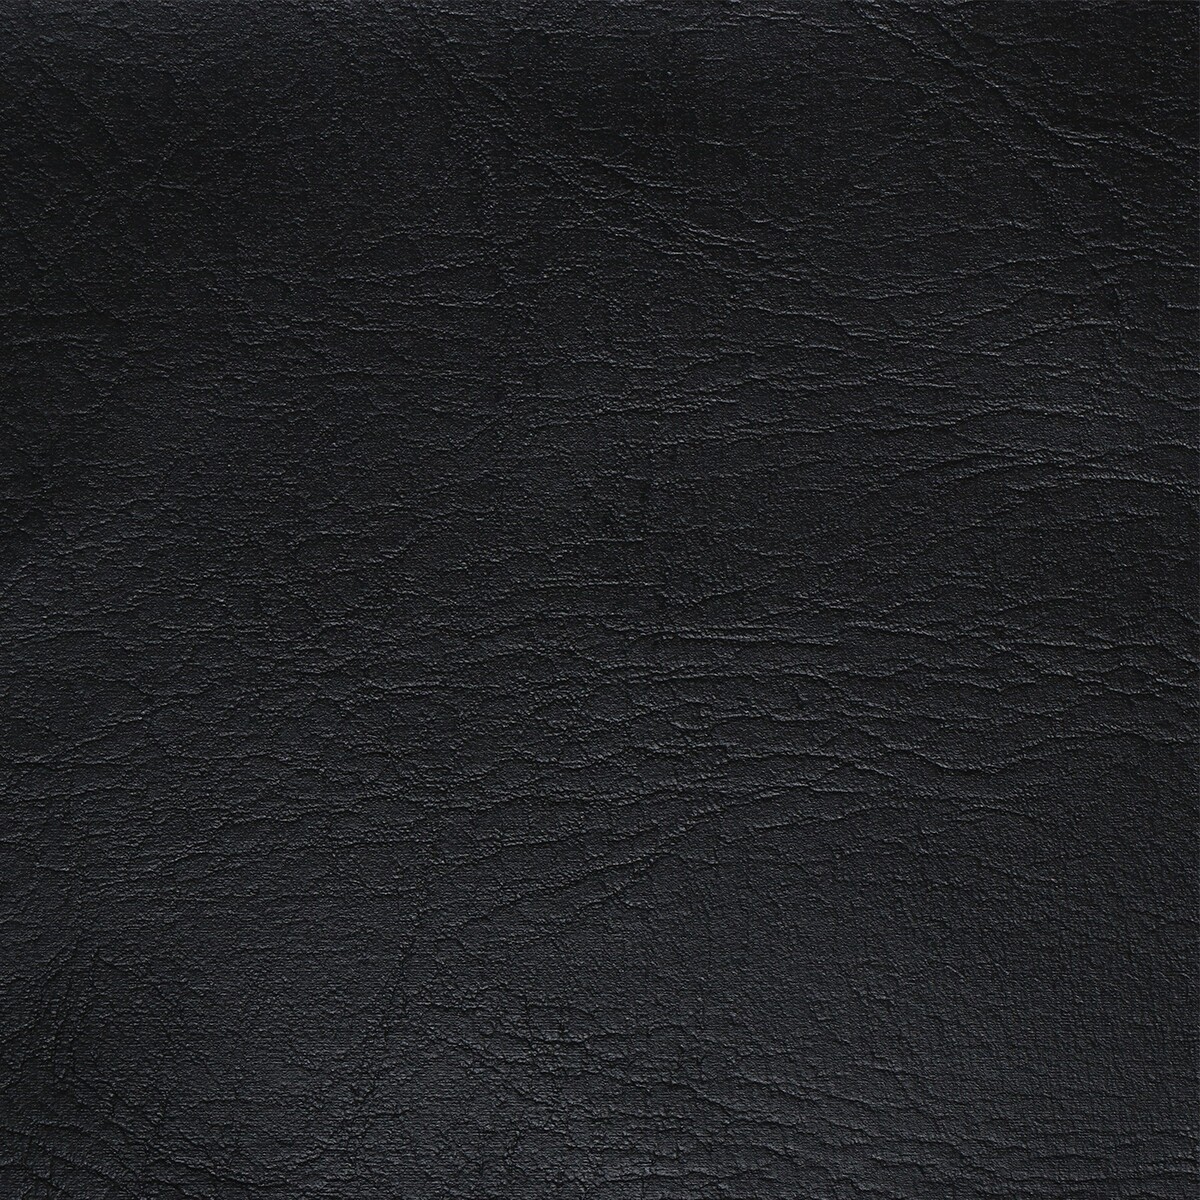 фото Комплект для обивки дверей, 110 × 200 см: иск.кожа, ватин 5 мм, гвозди, струна, черный, no brand